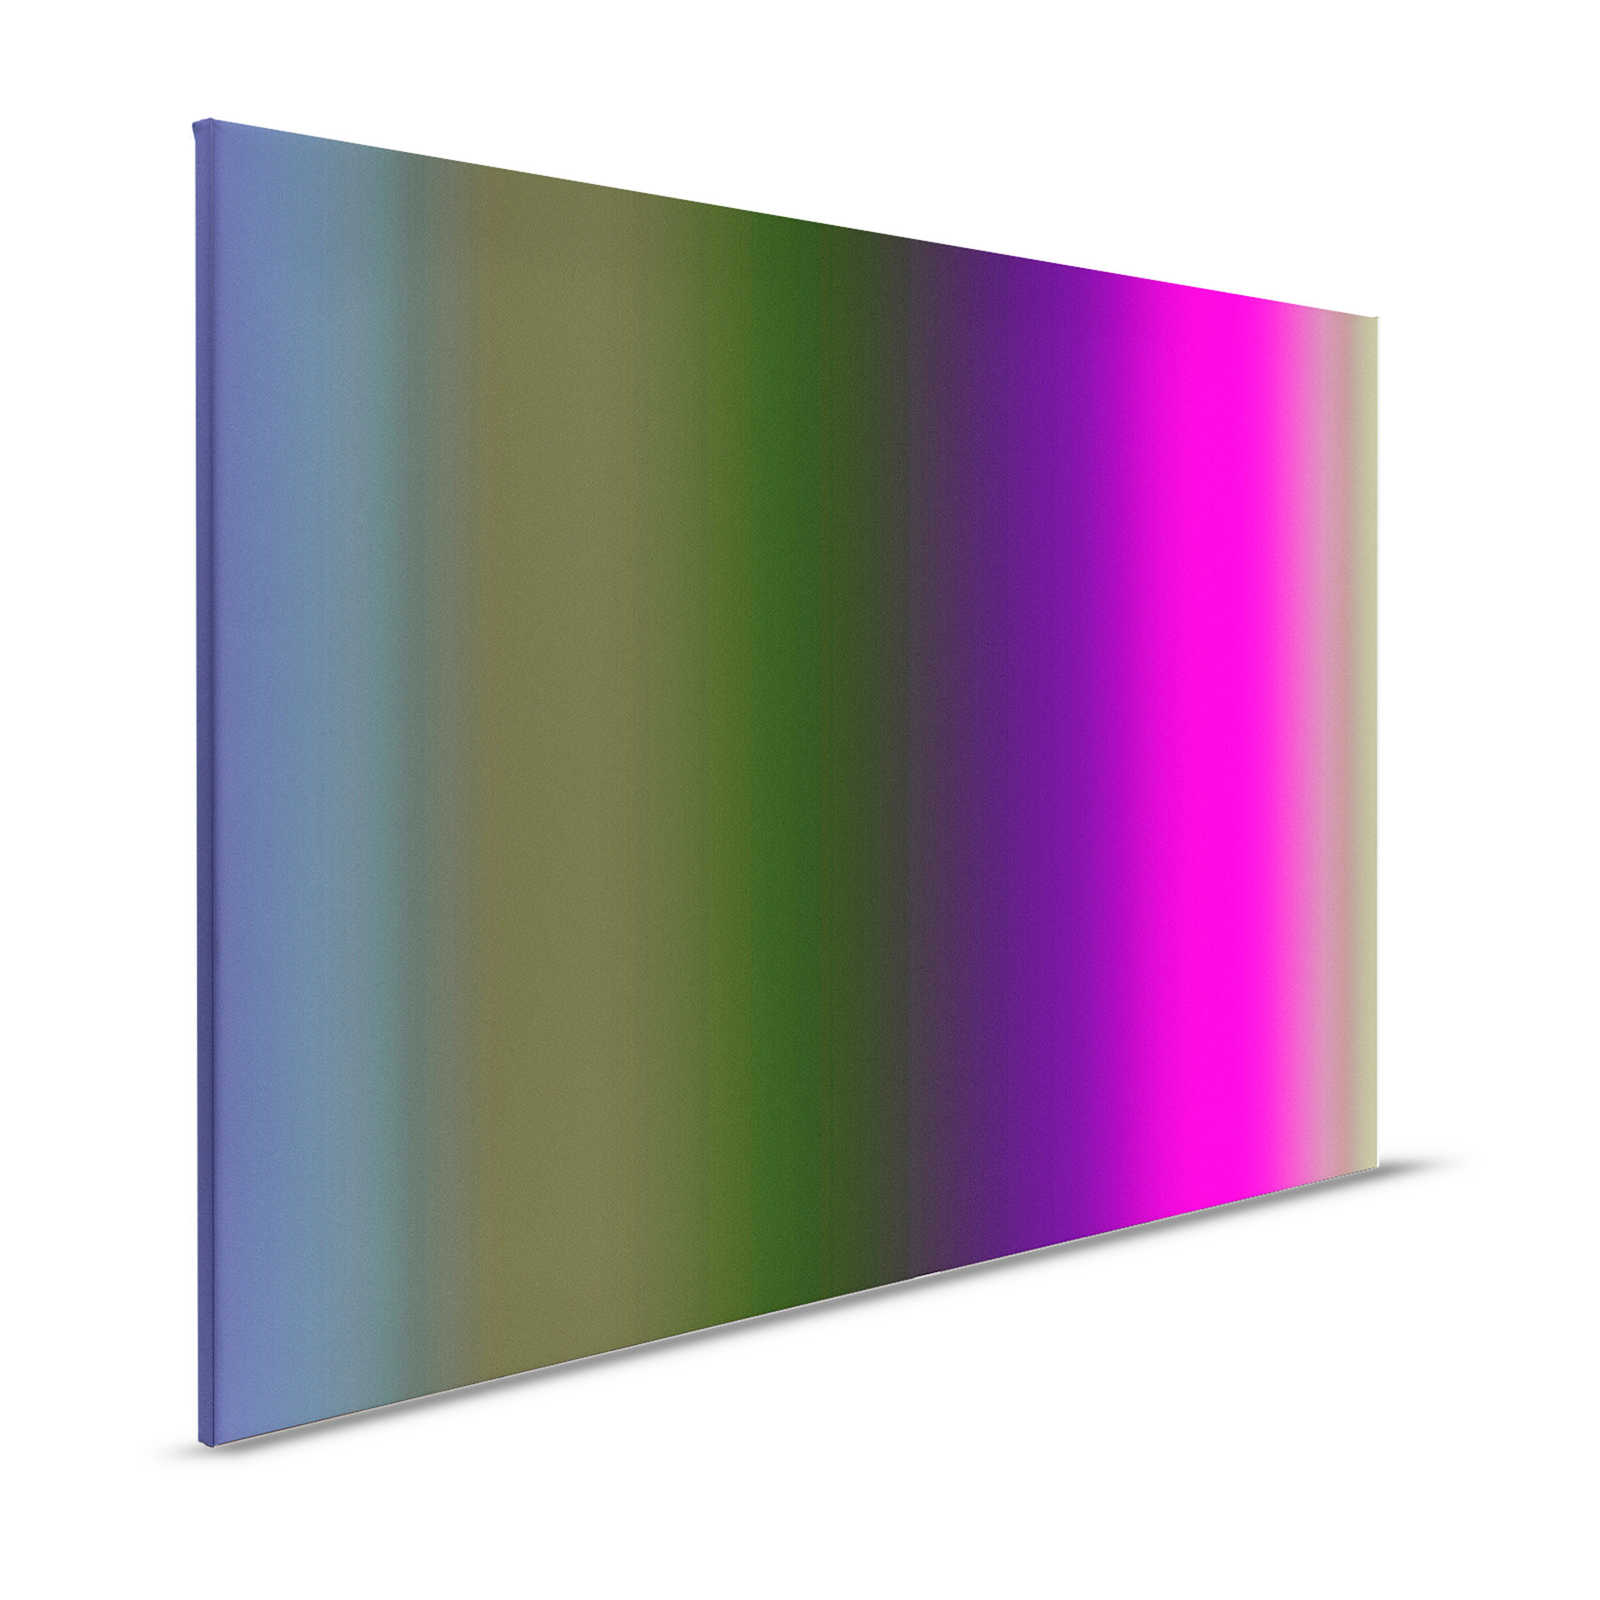 Over the Rainbow 3 - Canvas schilderij veelkleurig spectrum met neonroze - 1,20 m x 0,80 m
